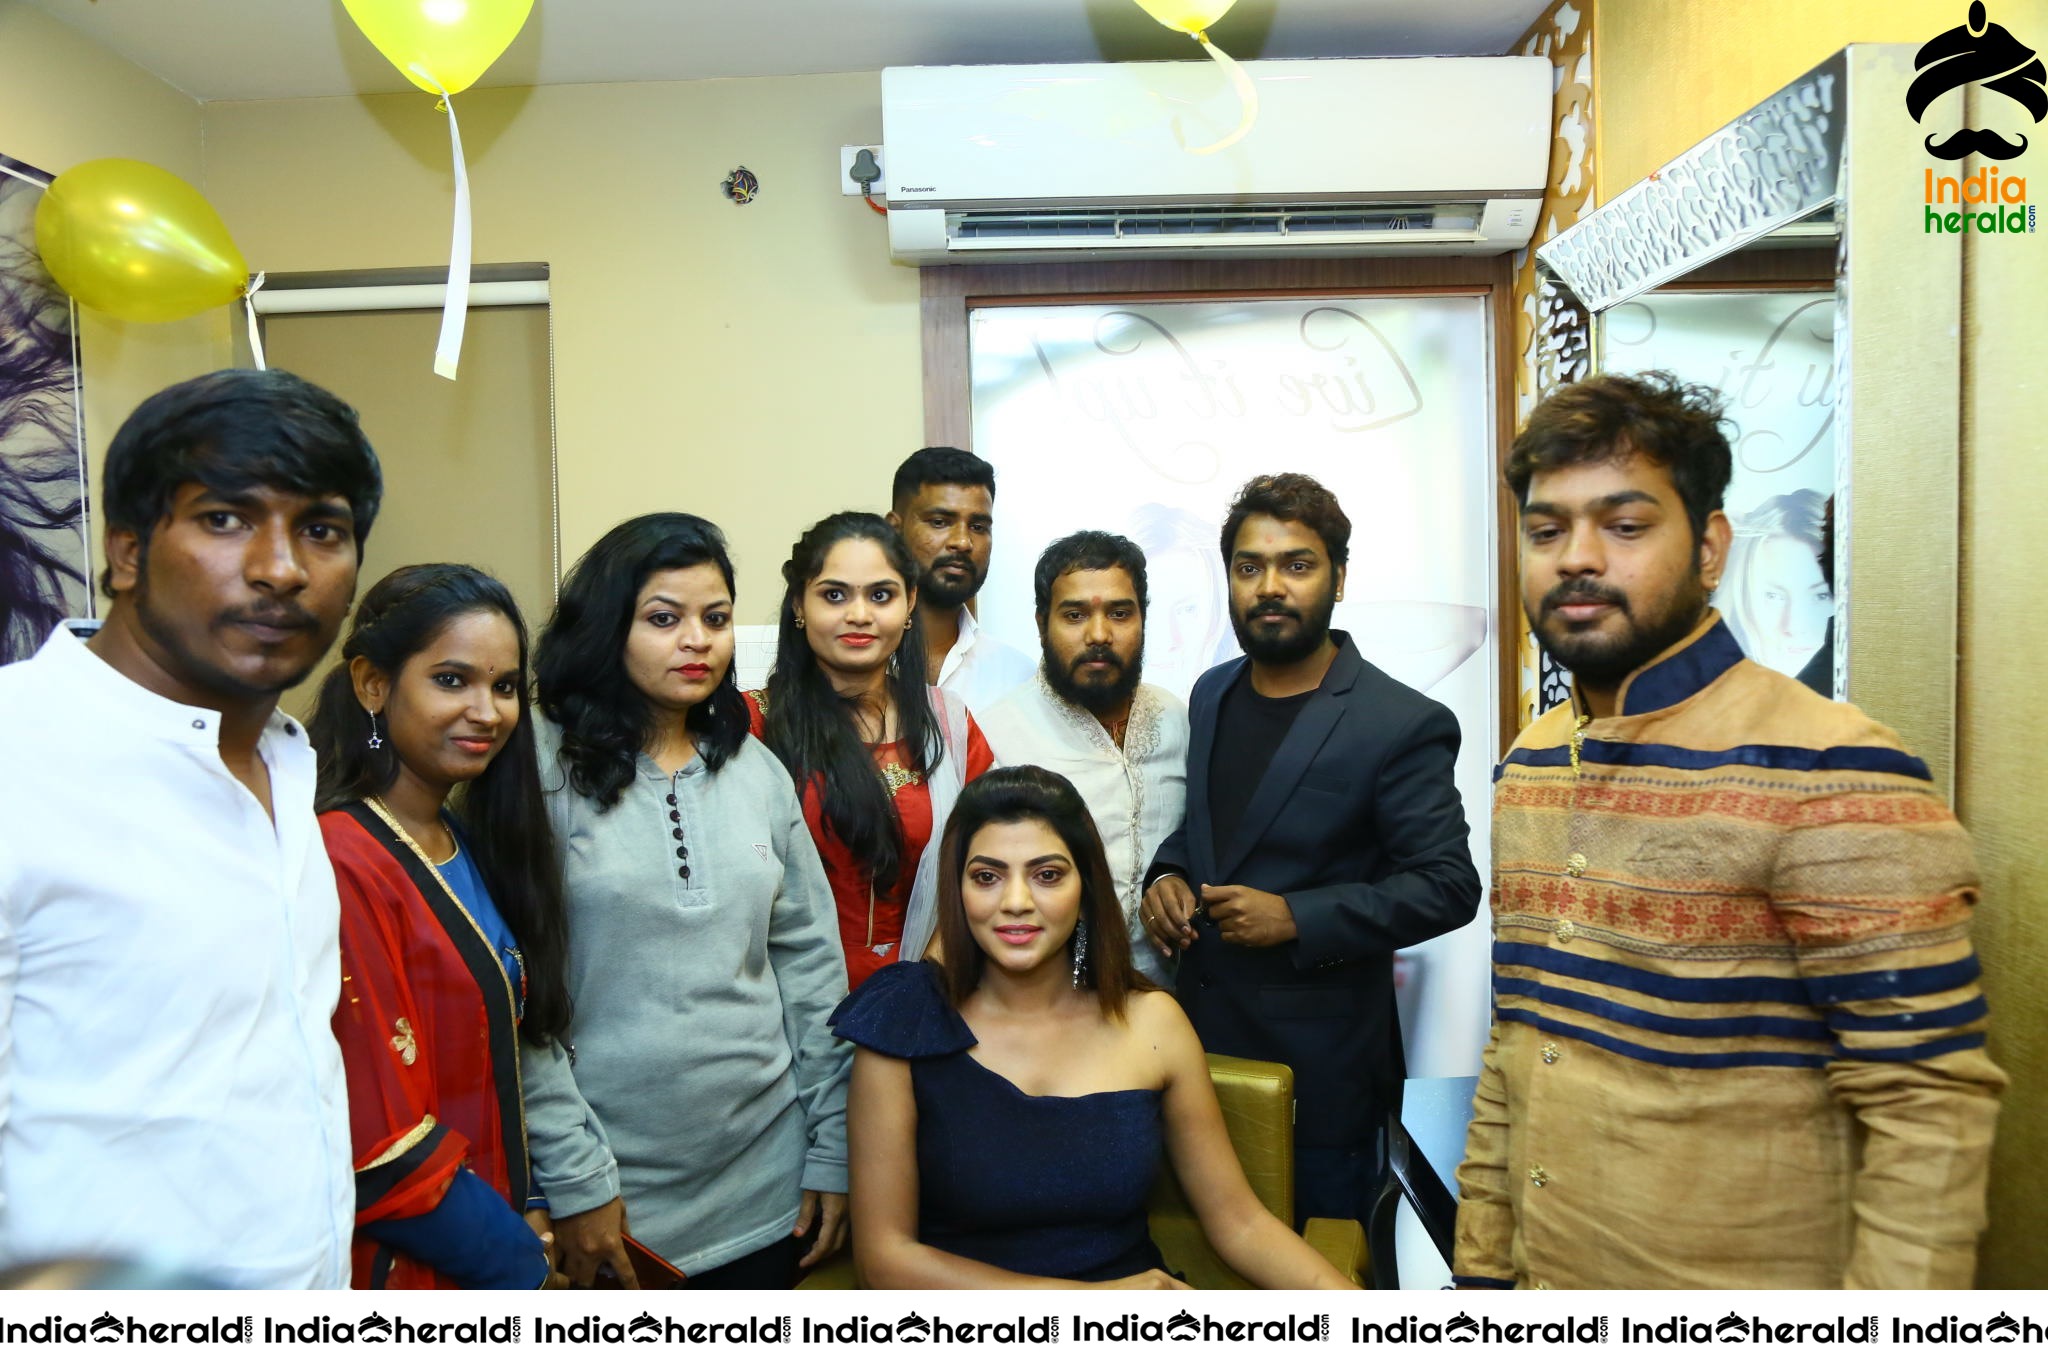 Boss Hair and Beauty Salon Launched At FilmNagar by Actress Lahari Set 2